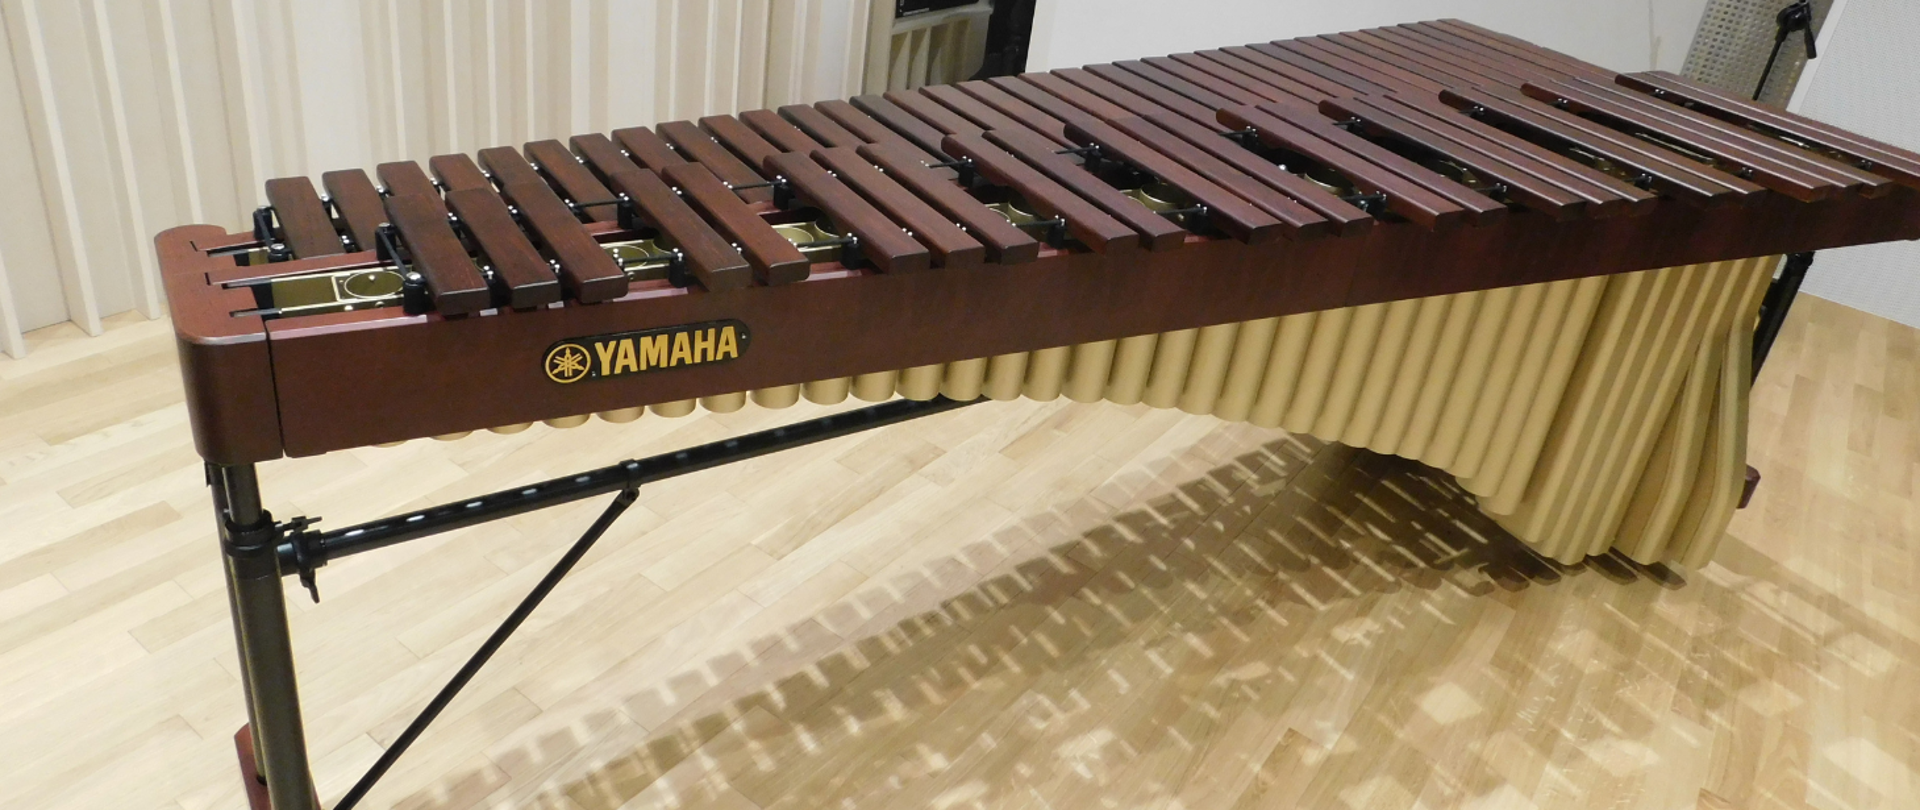 Na zdjęcia marimba 5- oktaw firmy Yamaha.Rama została pięknie przyozdobiona naturalnym drewnem oraz mocnym, lecz lekkim metalem.